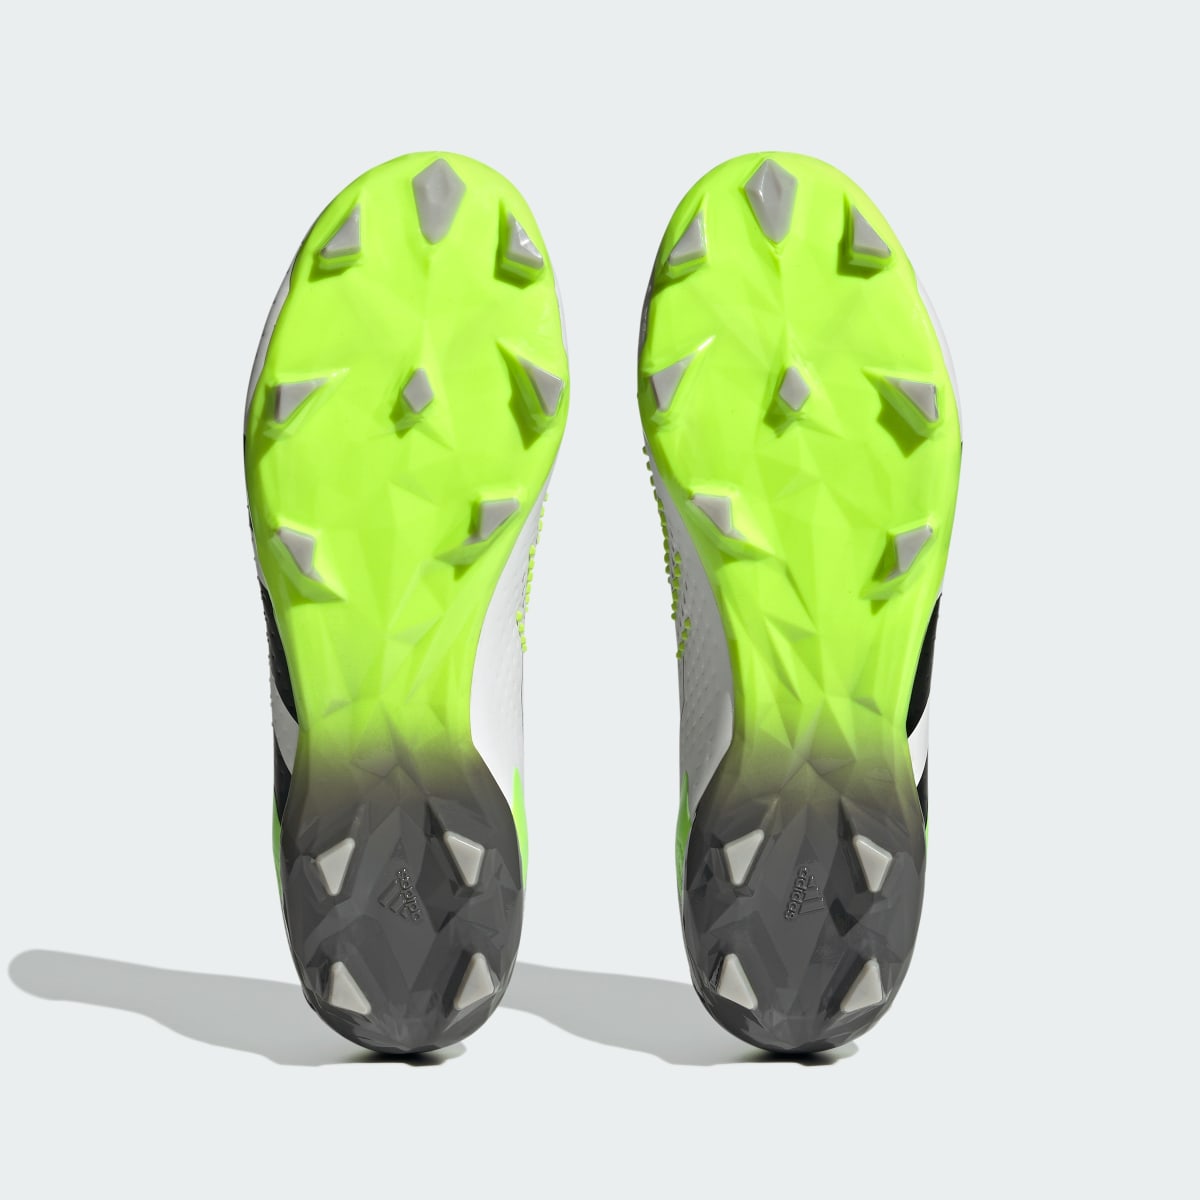 Adidas Calzado de fútbol Predator Accuracy.2 Terreno Firme. 4